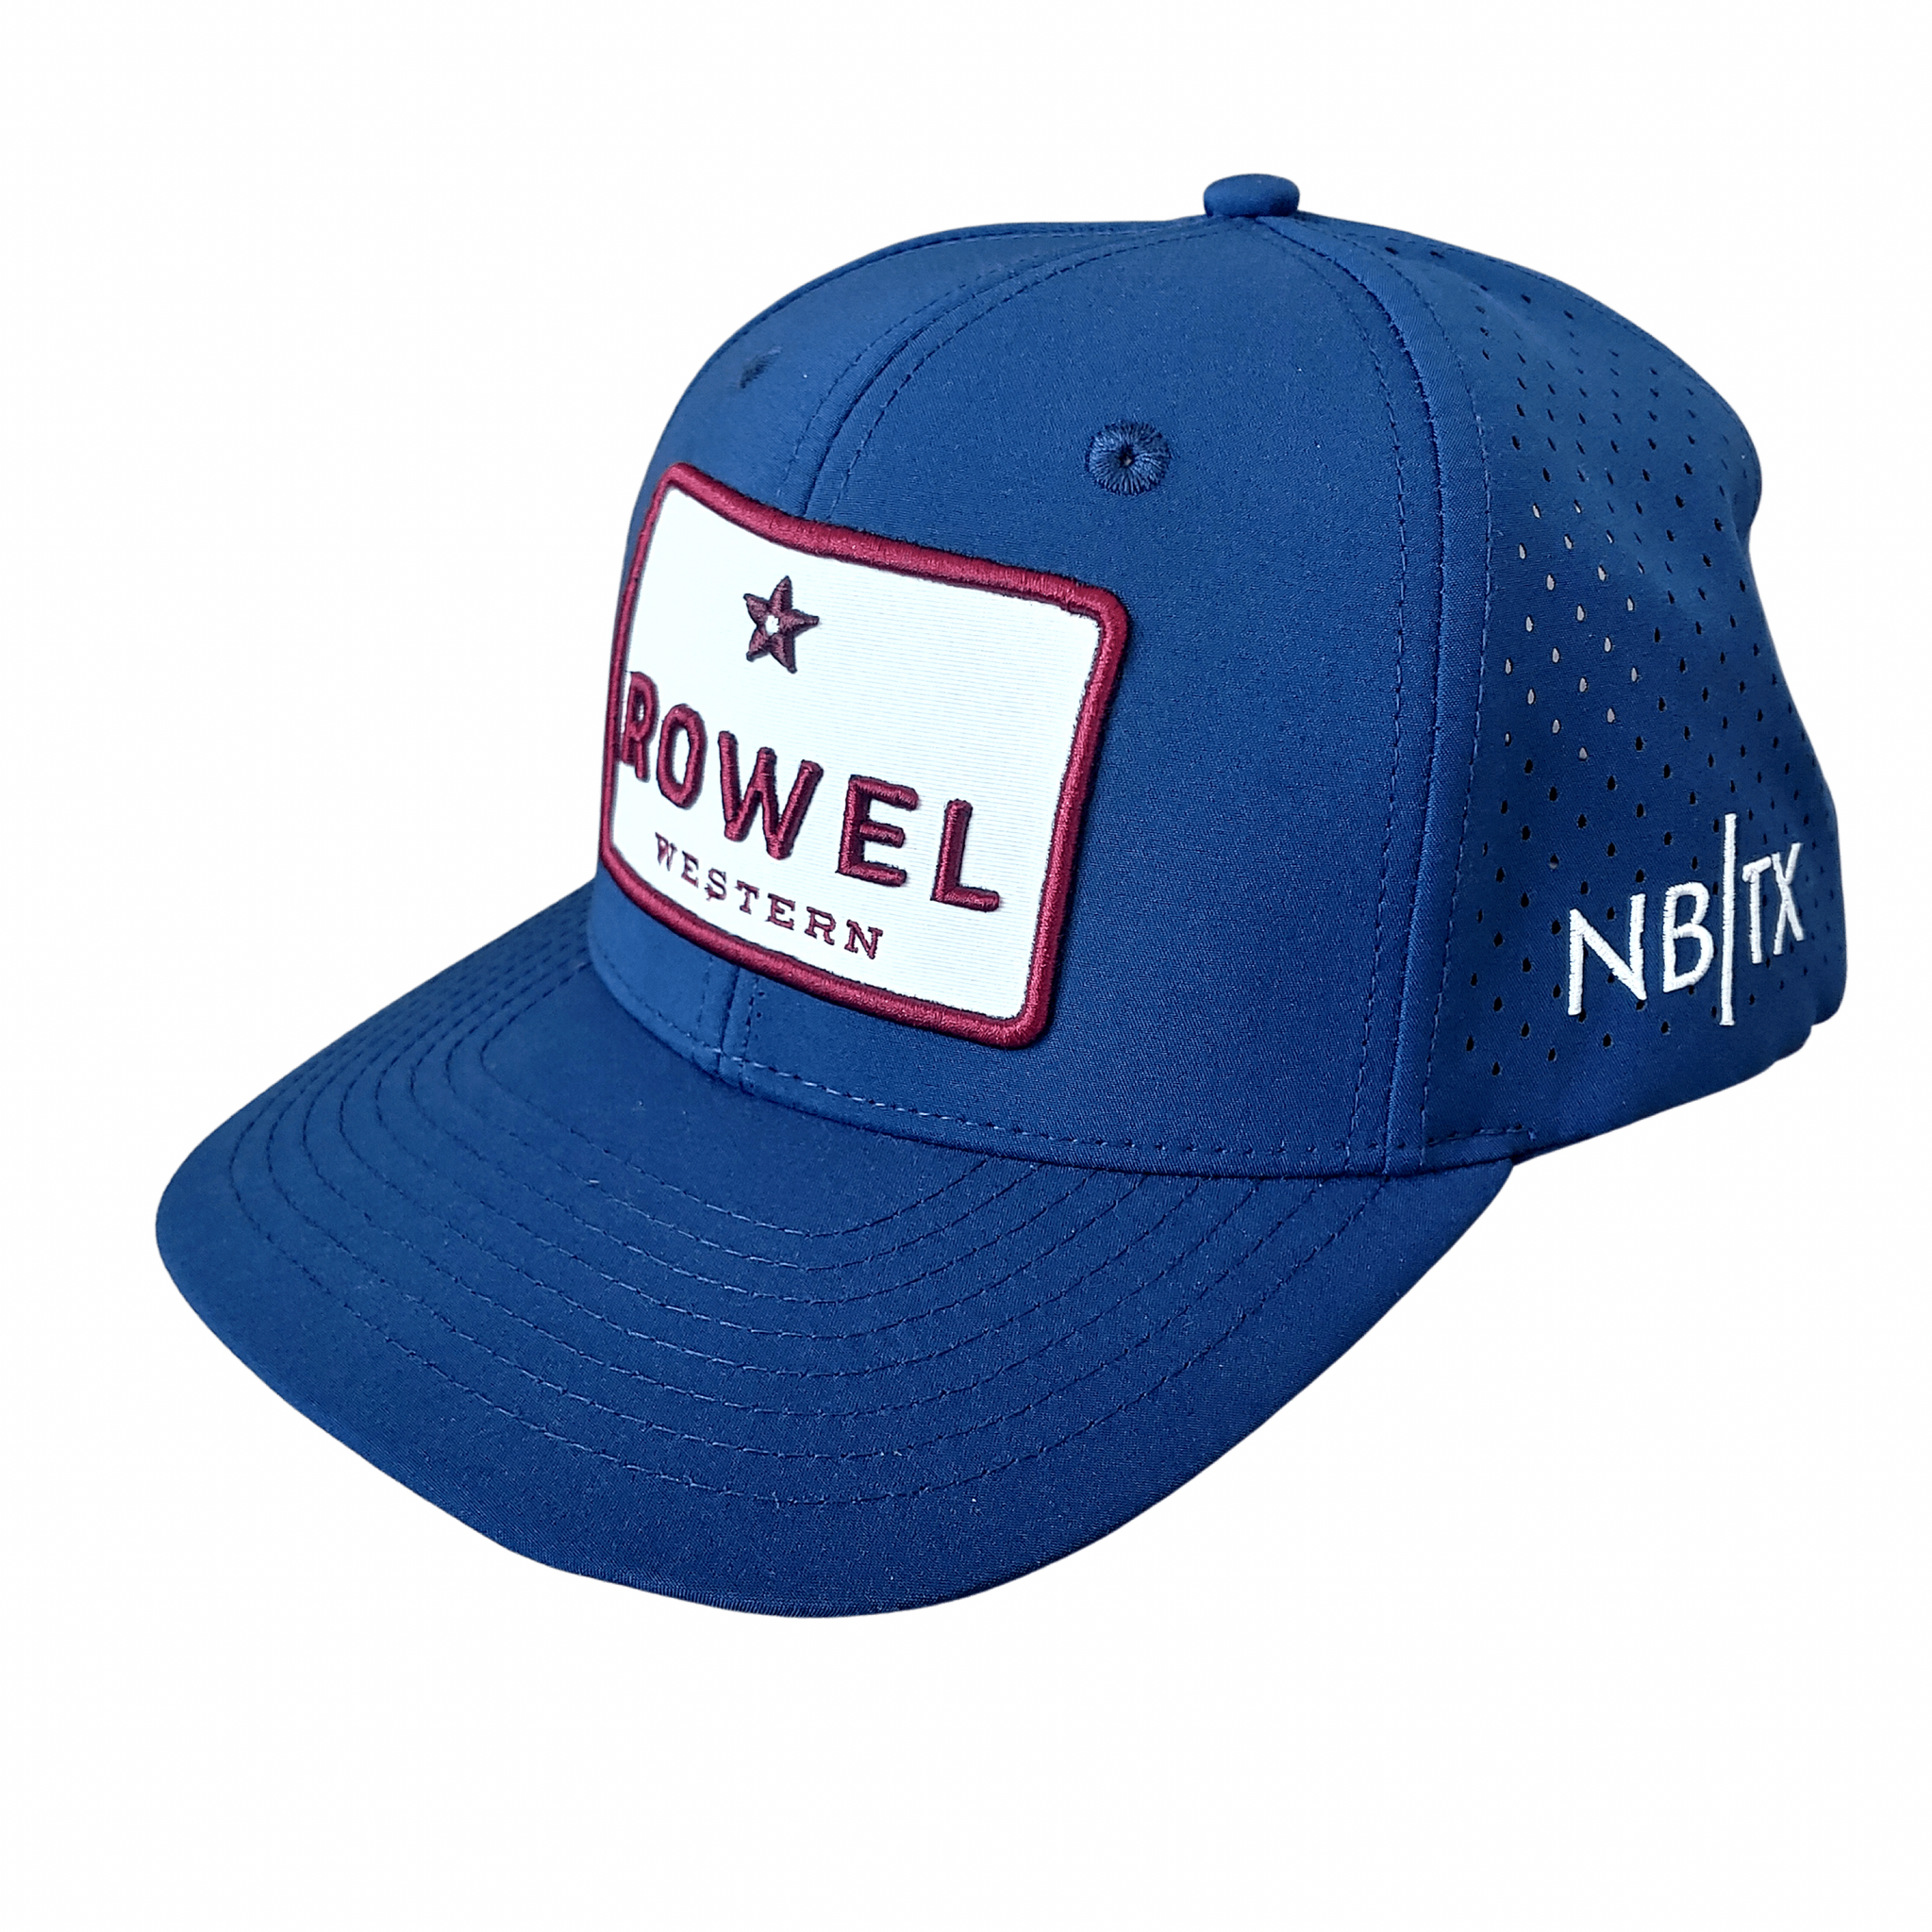 Rowel Western + Rowel Breathable Hat